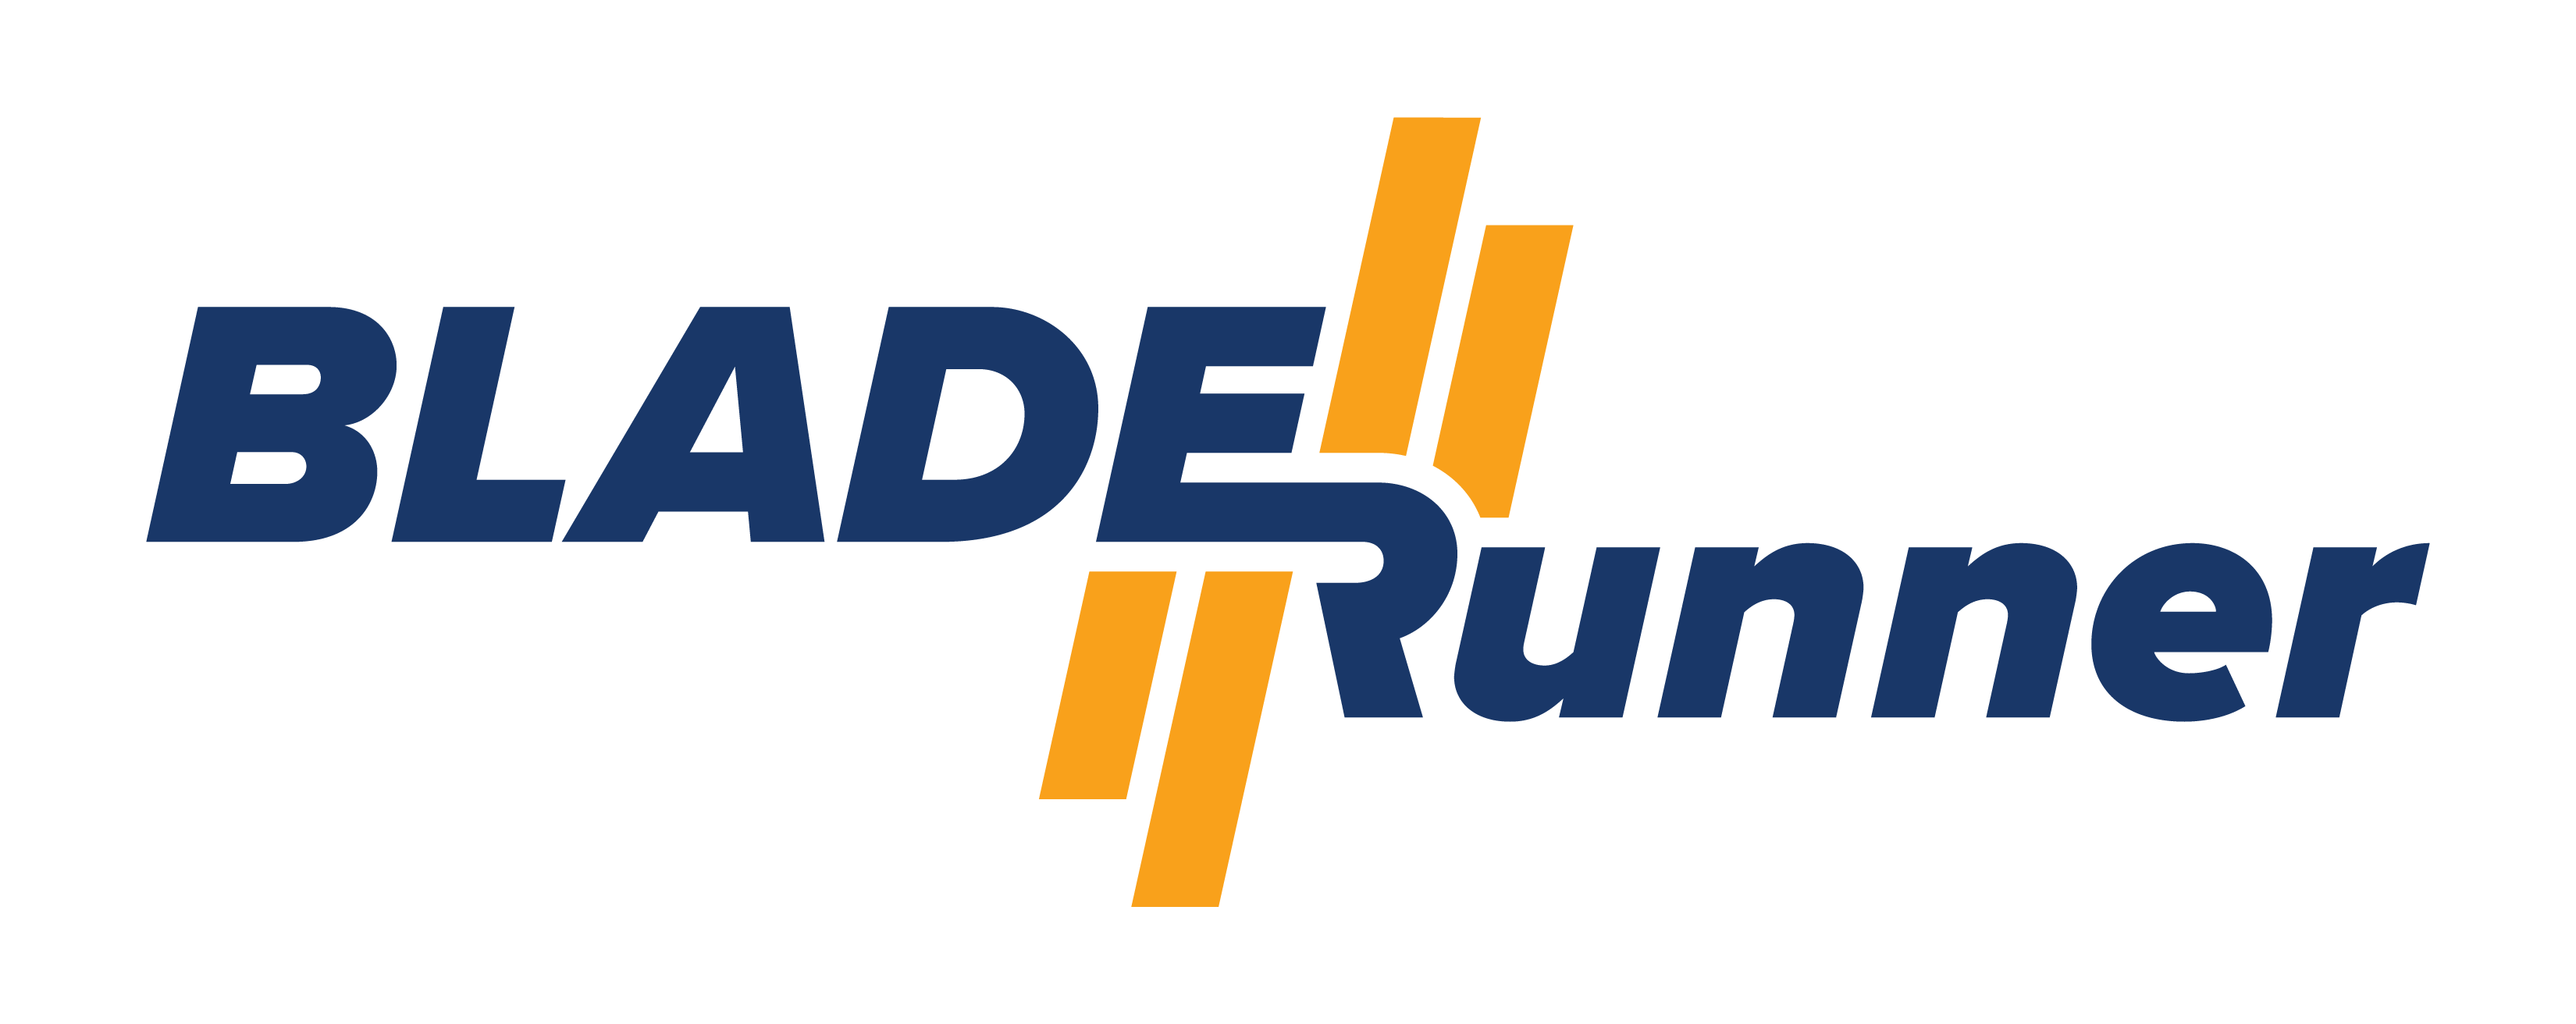 BLADE//runner logo